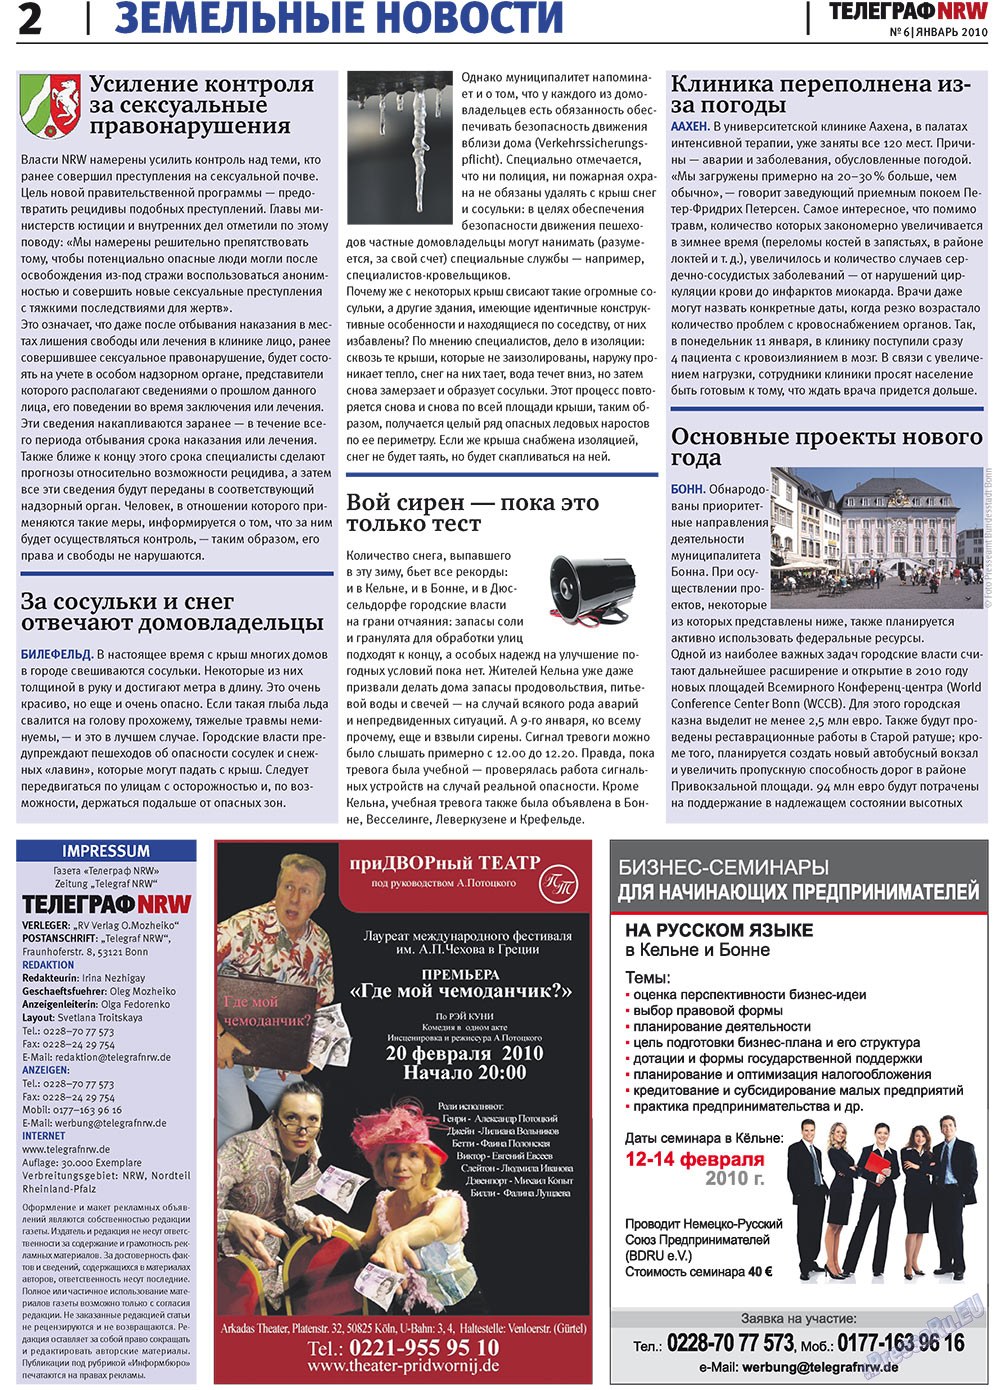 Телеграф NRW (газета). 2010 год, номер 1, стр. 2